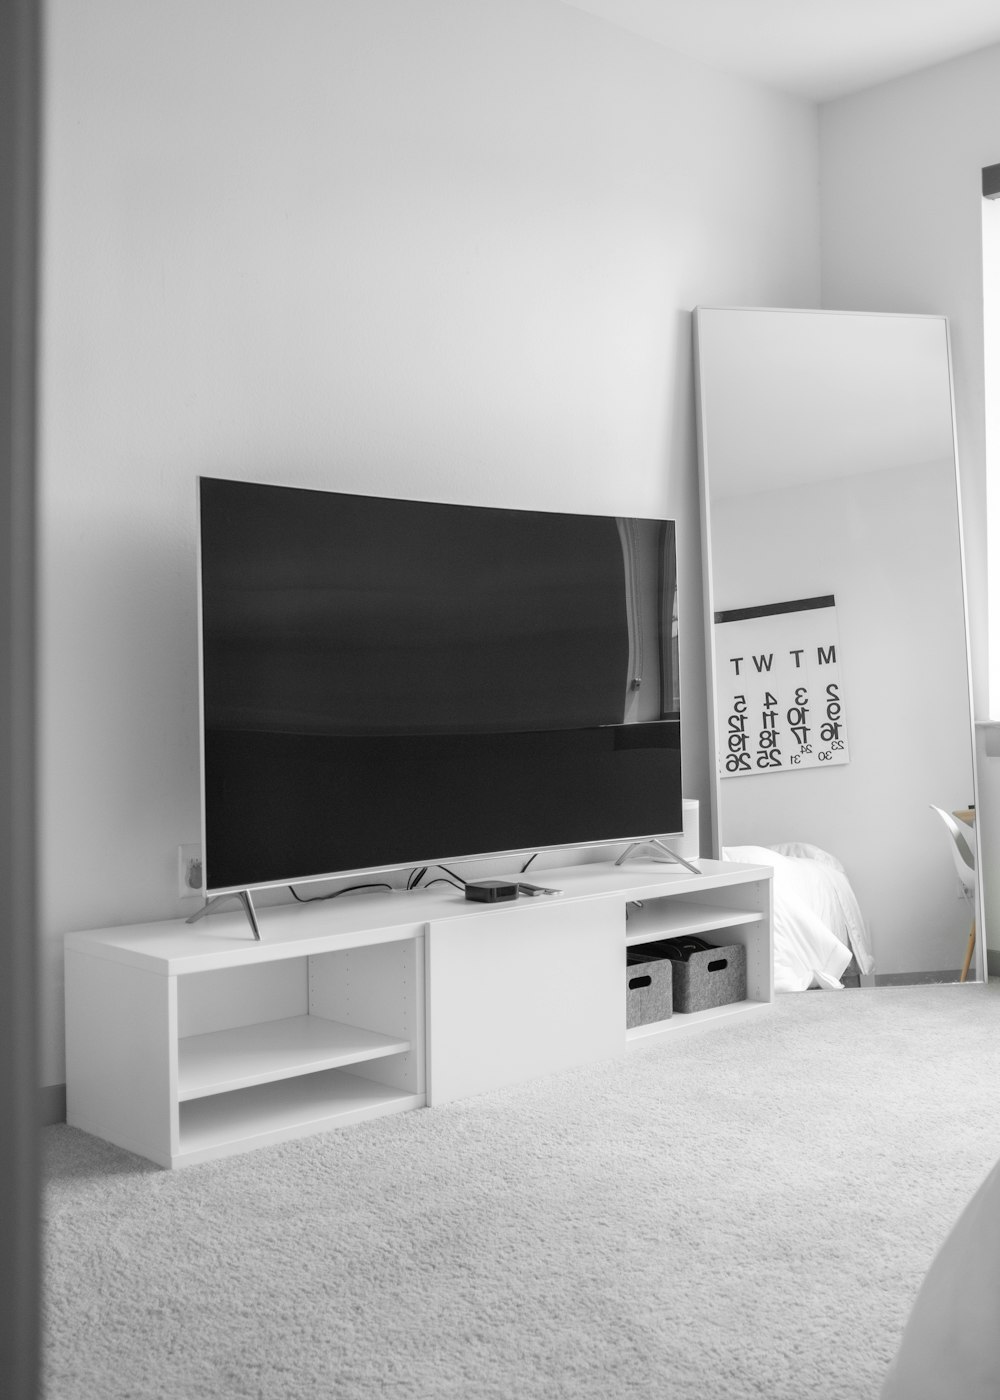 TV de tela plana cinza no suporte de TV branco